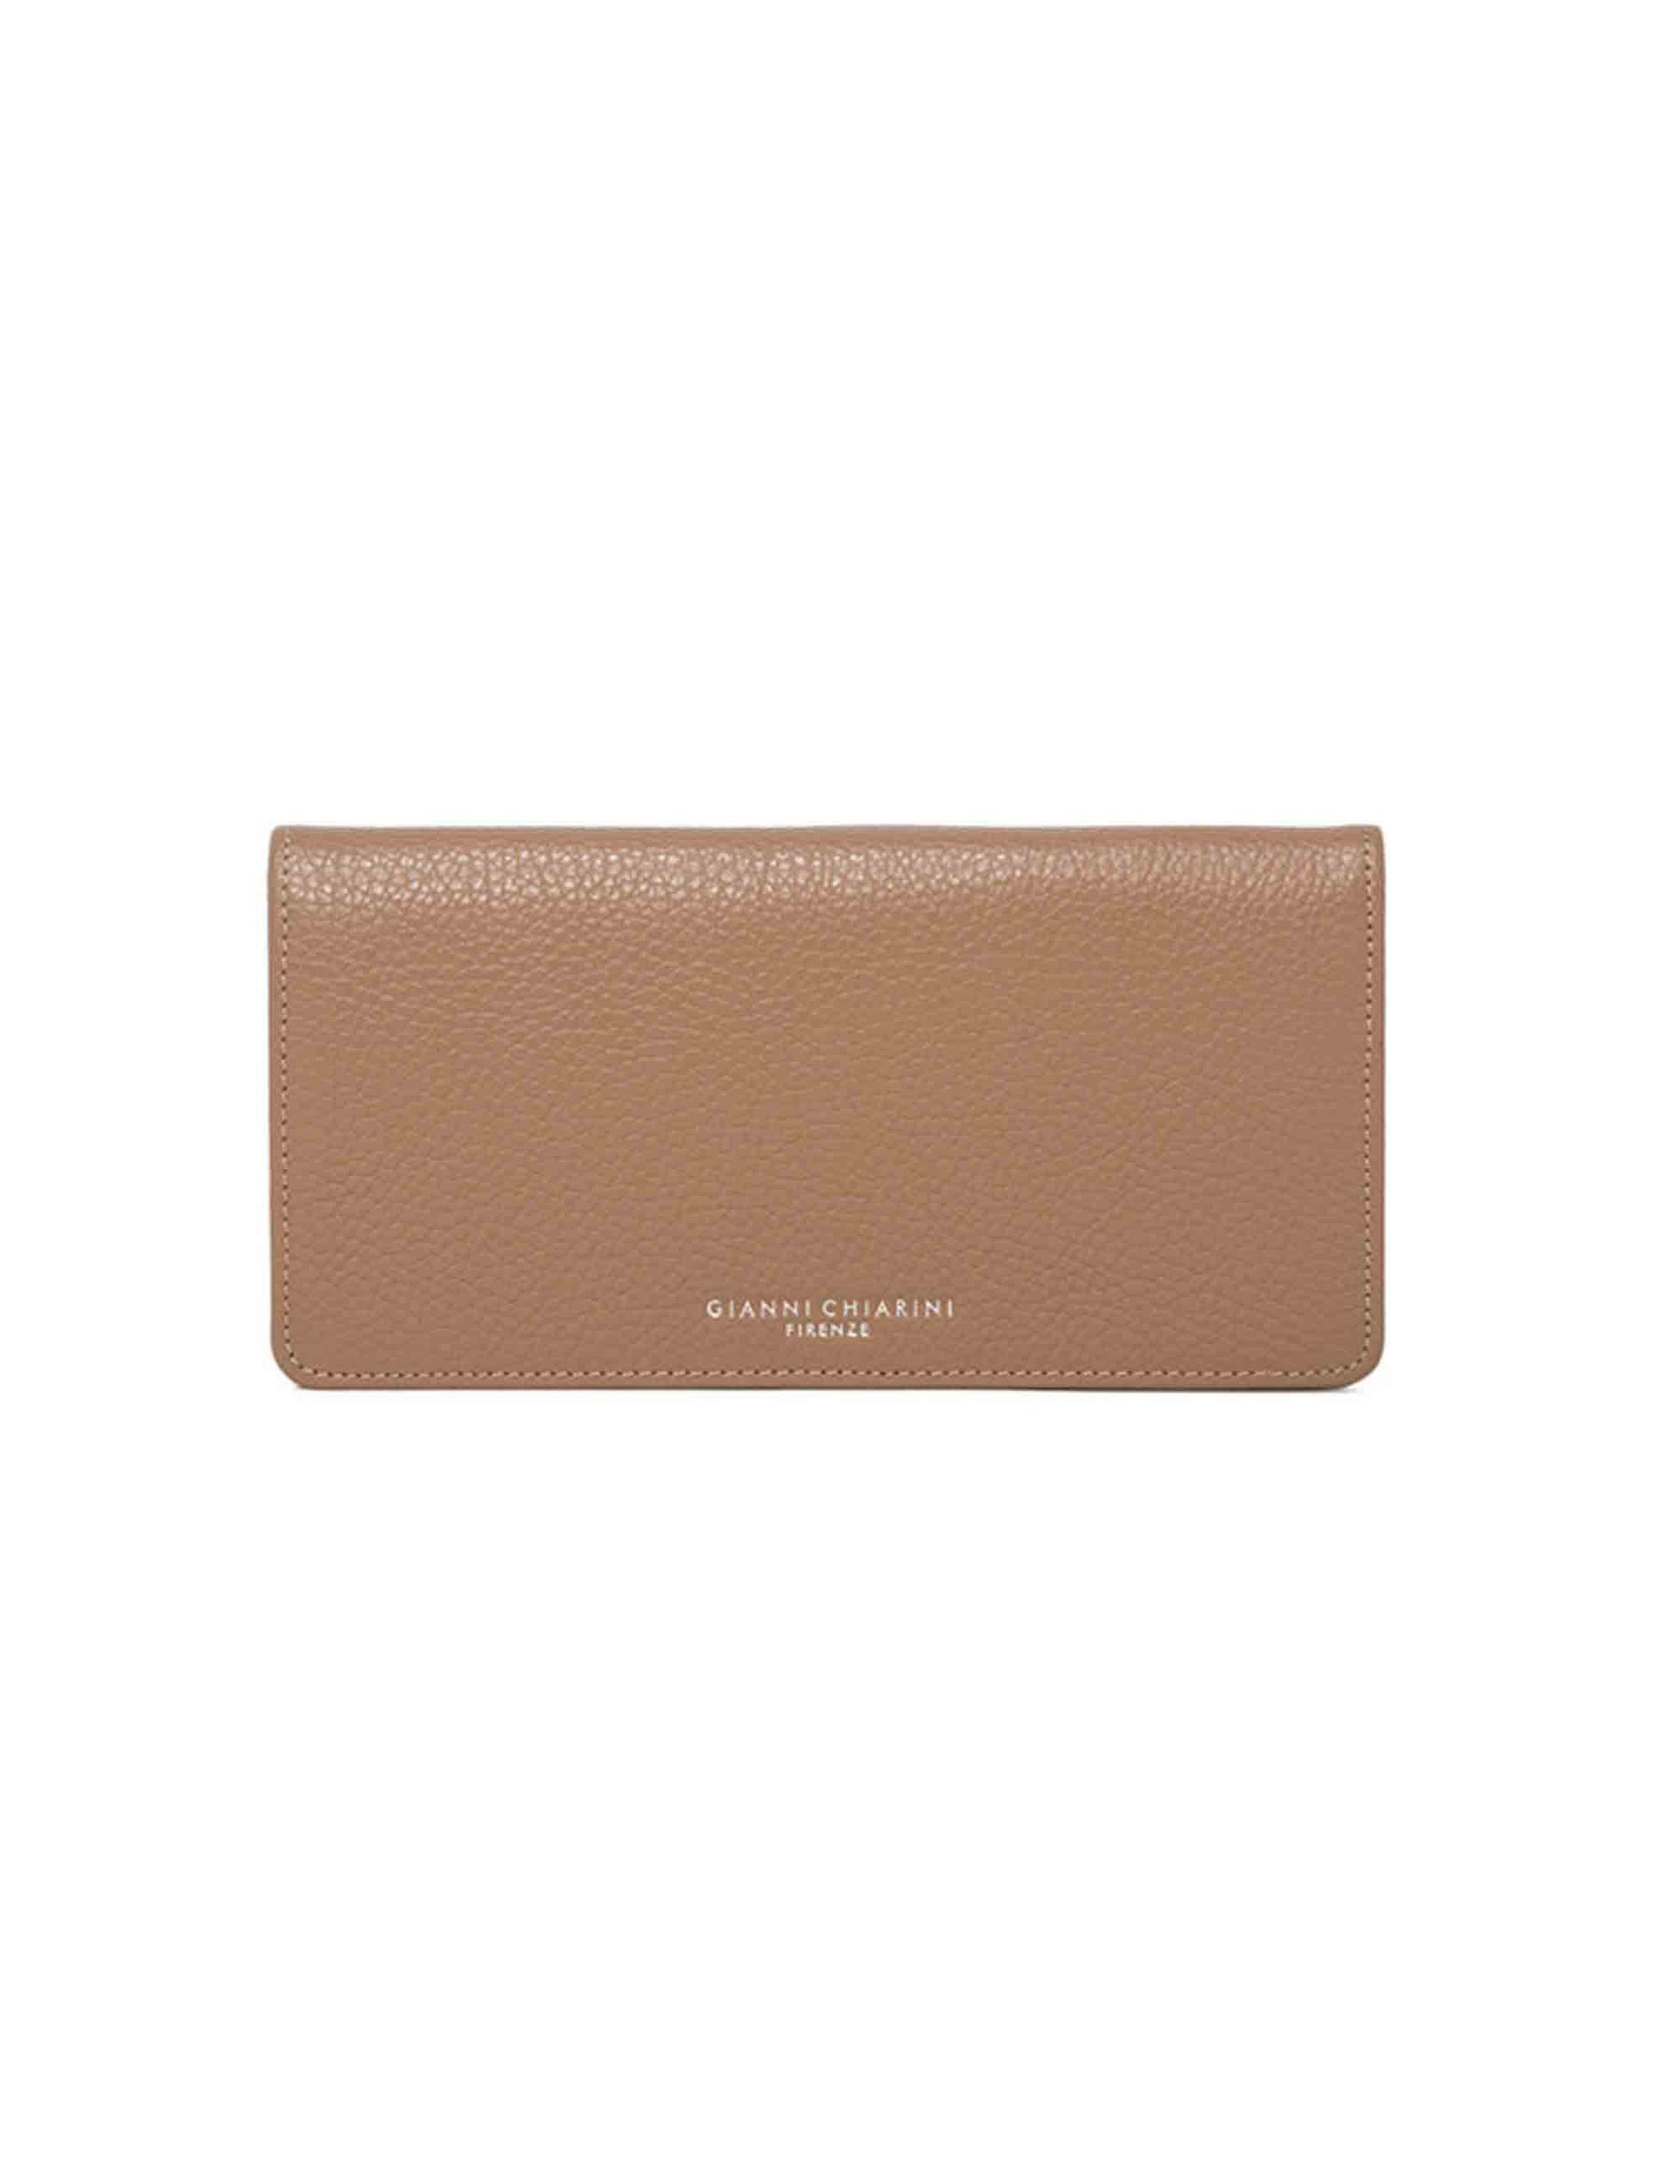 Women's camel leather wallet